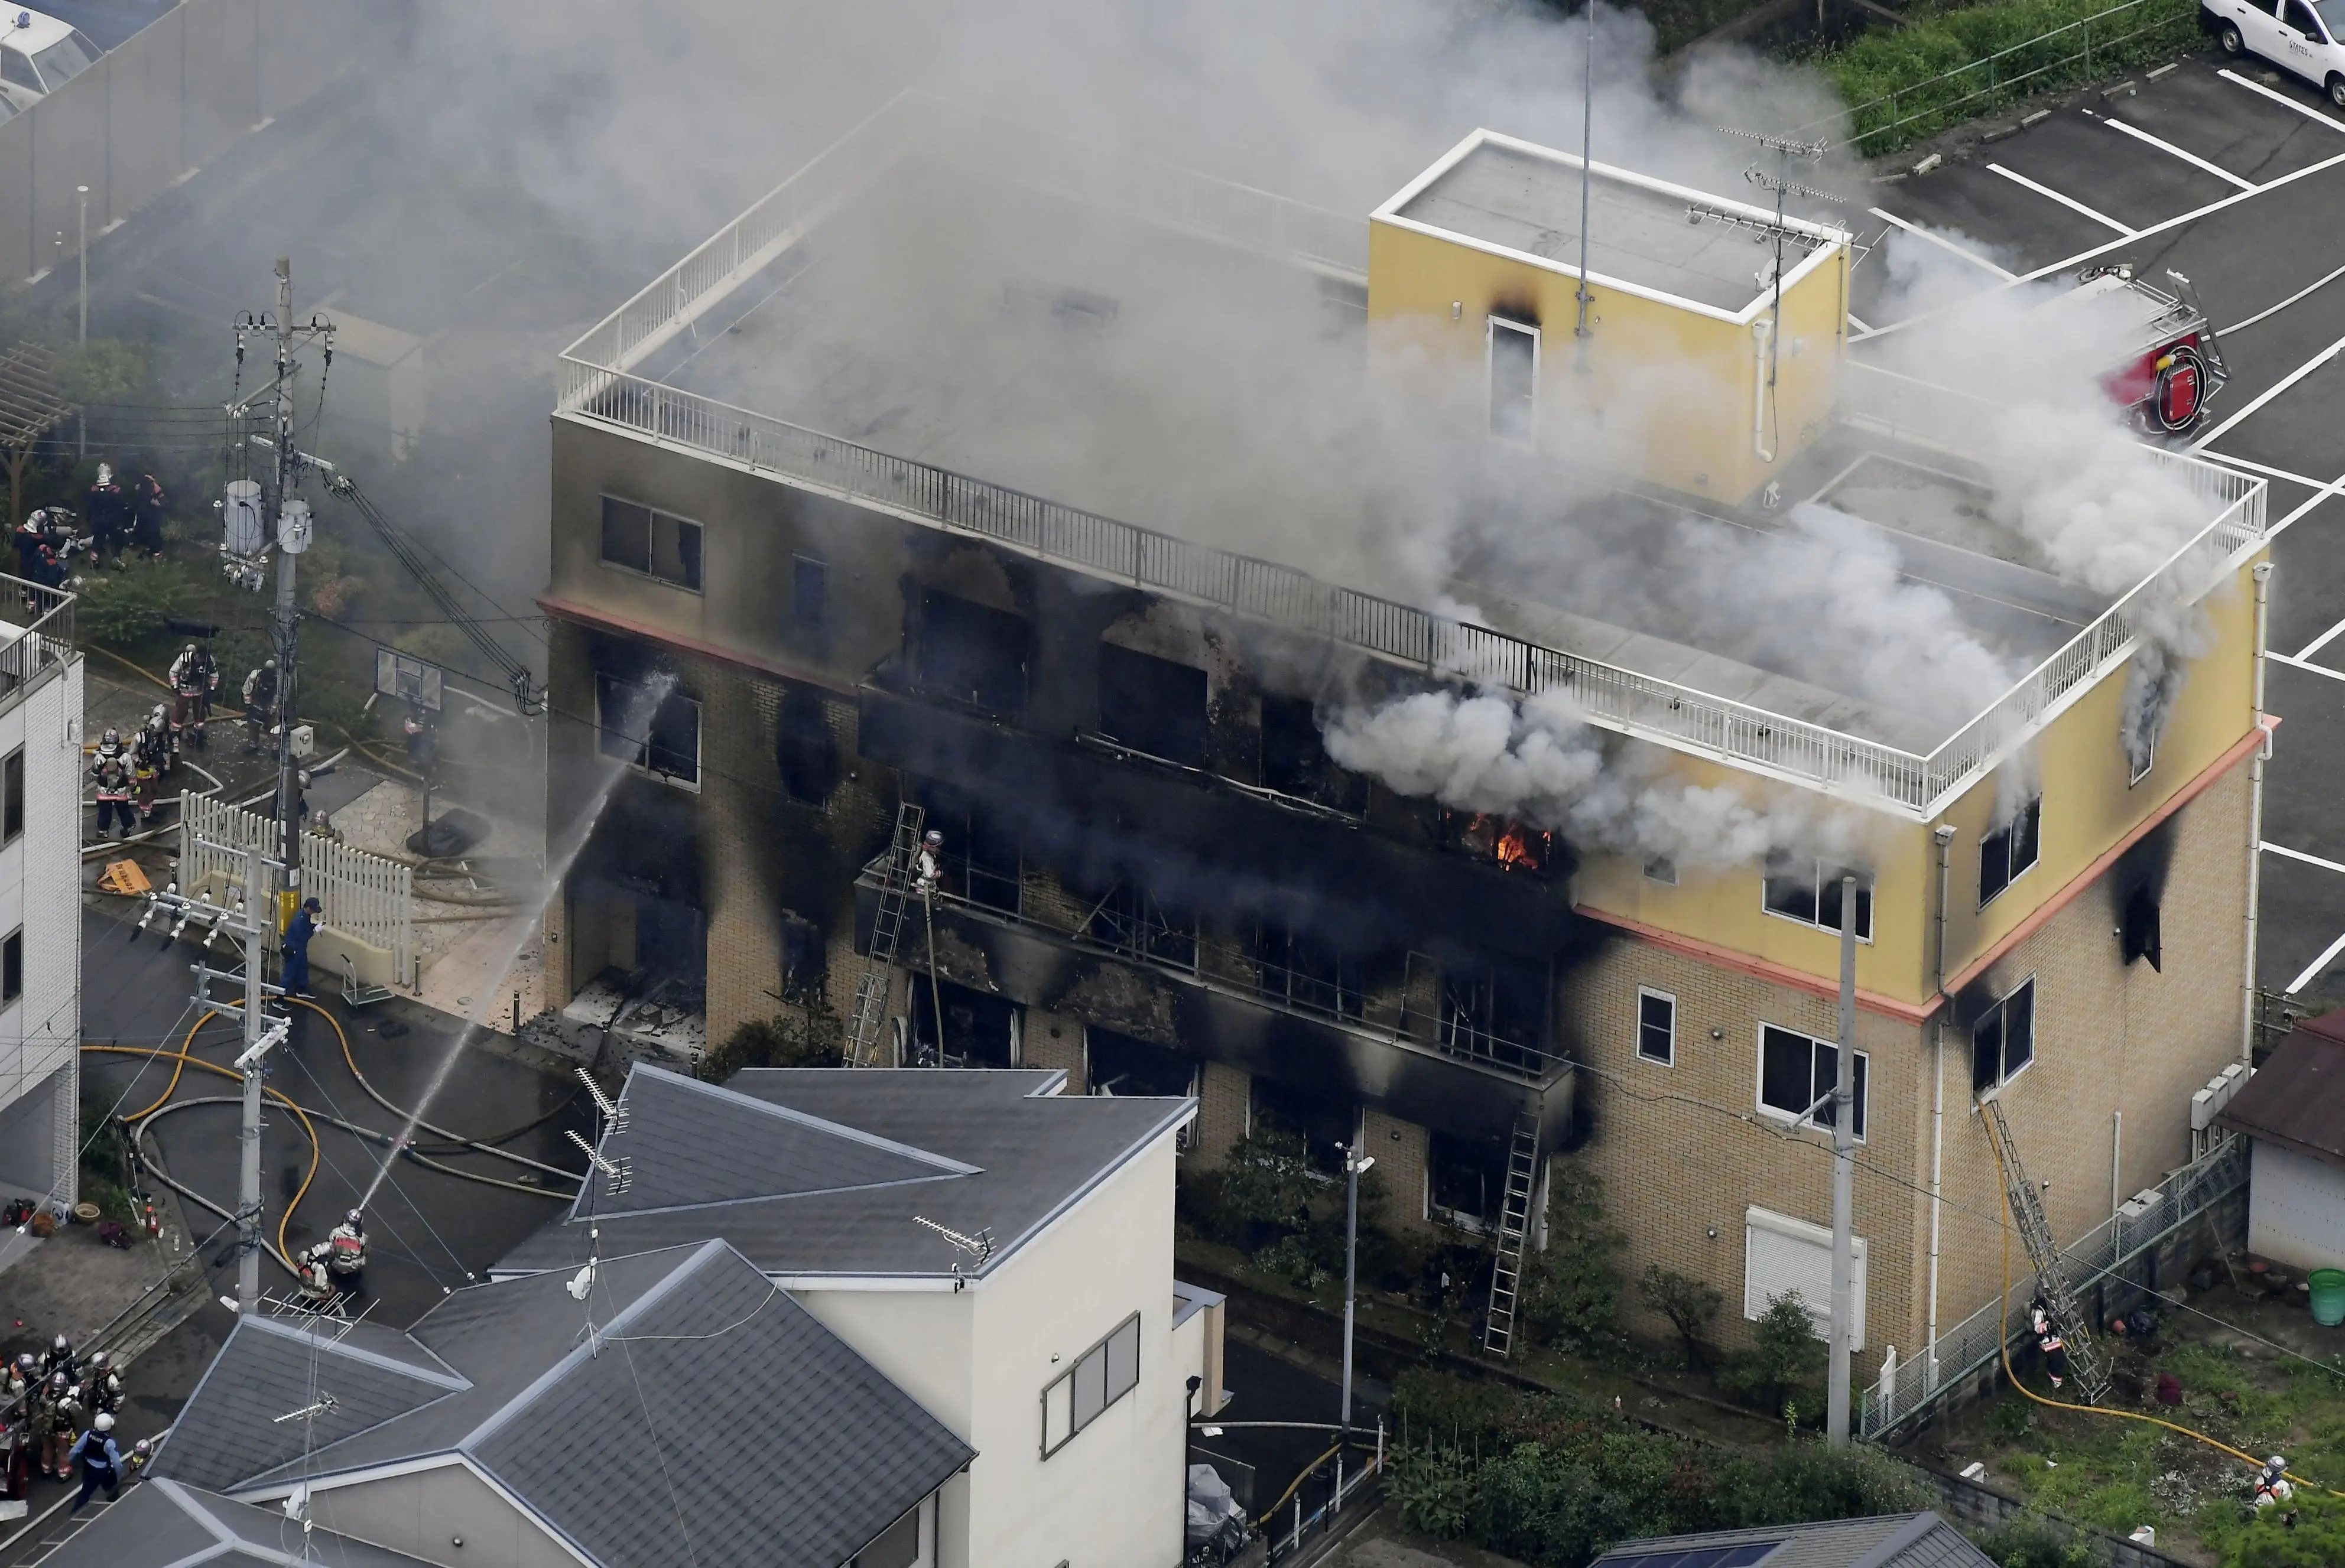 כוחות כיבוי מנסים להתגבר על שריפה בעקבות הצתה שפרצה בבניין בחברת קיוטו ביפן 17 ביולי 2019